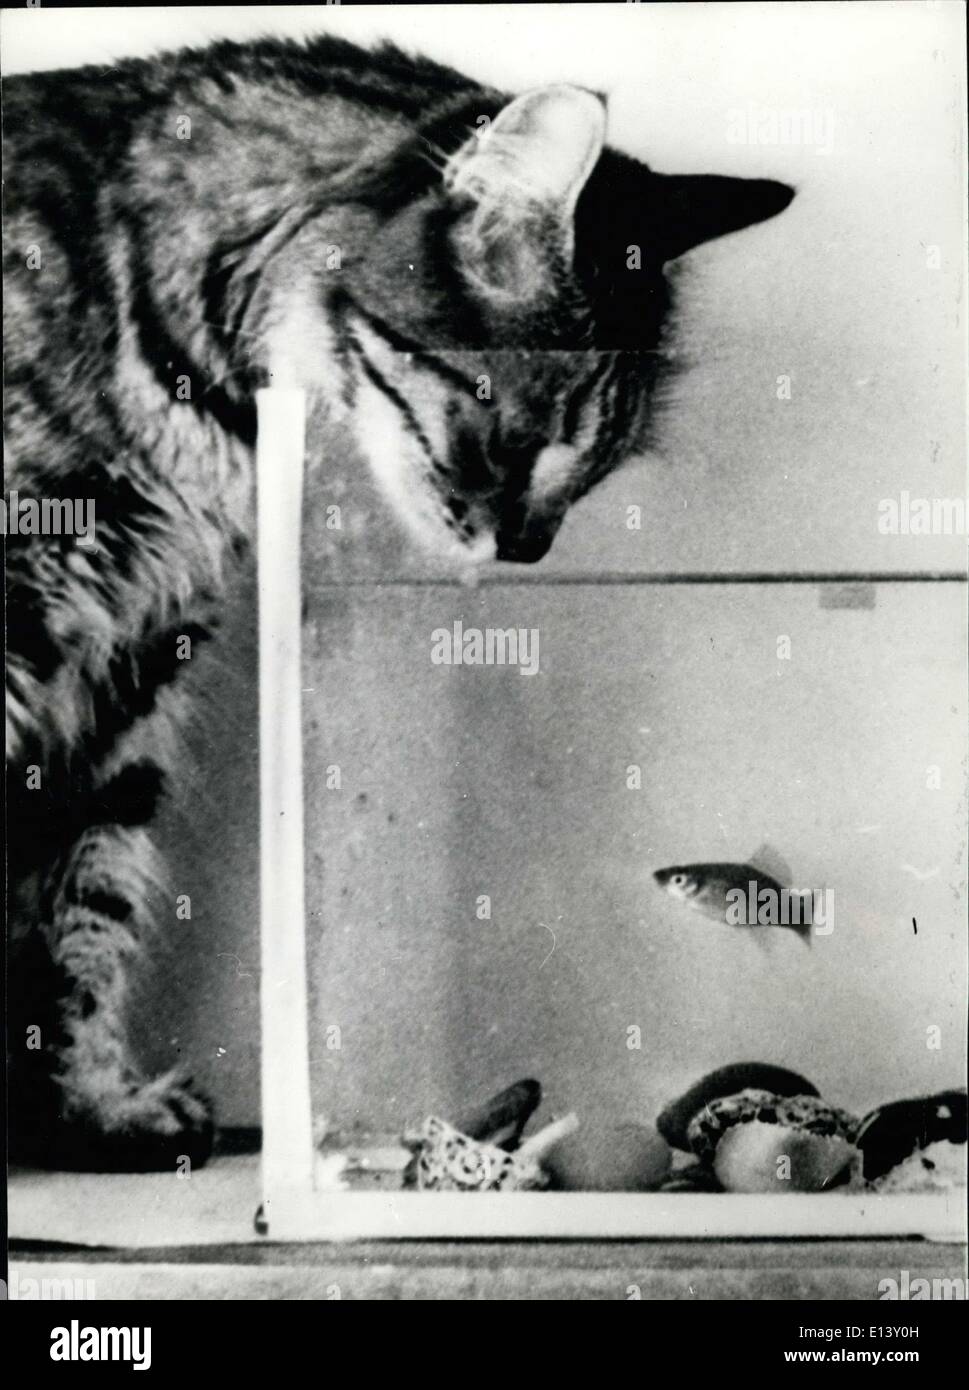 Marzo 31, 2012 - El gato y el pez de colores: atigrado intenta conforma su hind si vale la pena el riesgo de sus amantes ira, para pescar el pez mascota. Foto de stock